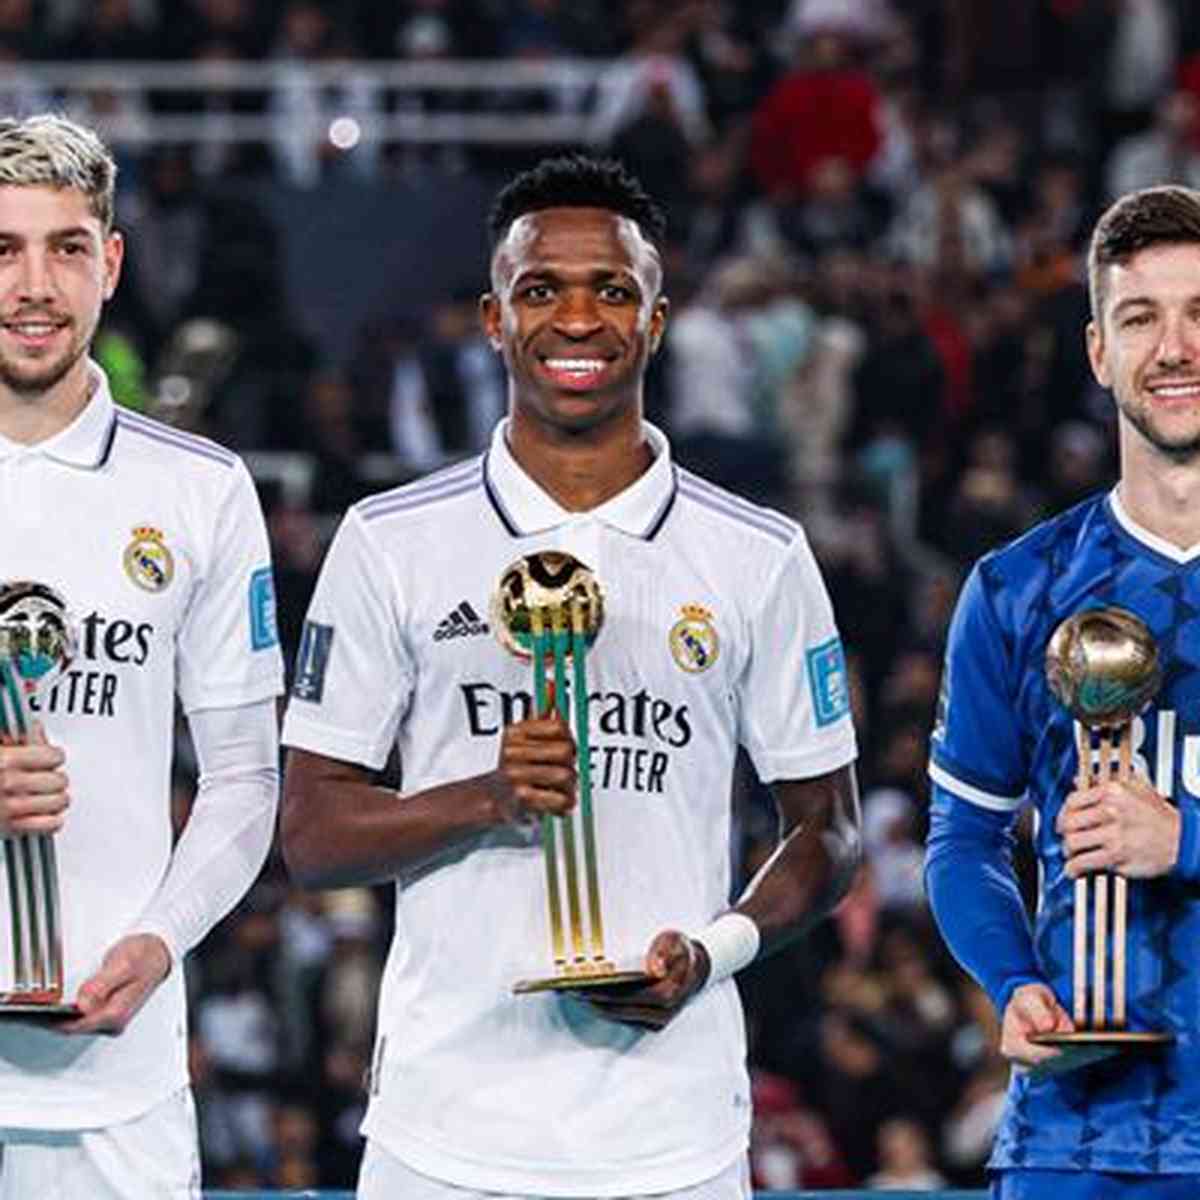 Vini Jr vence Bola de Ouro do Mundial após título com Real Madrid